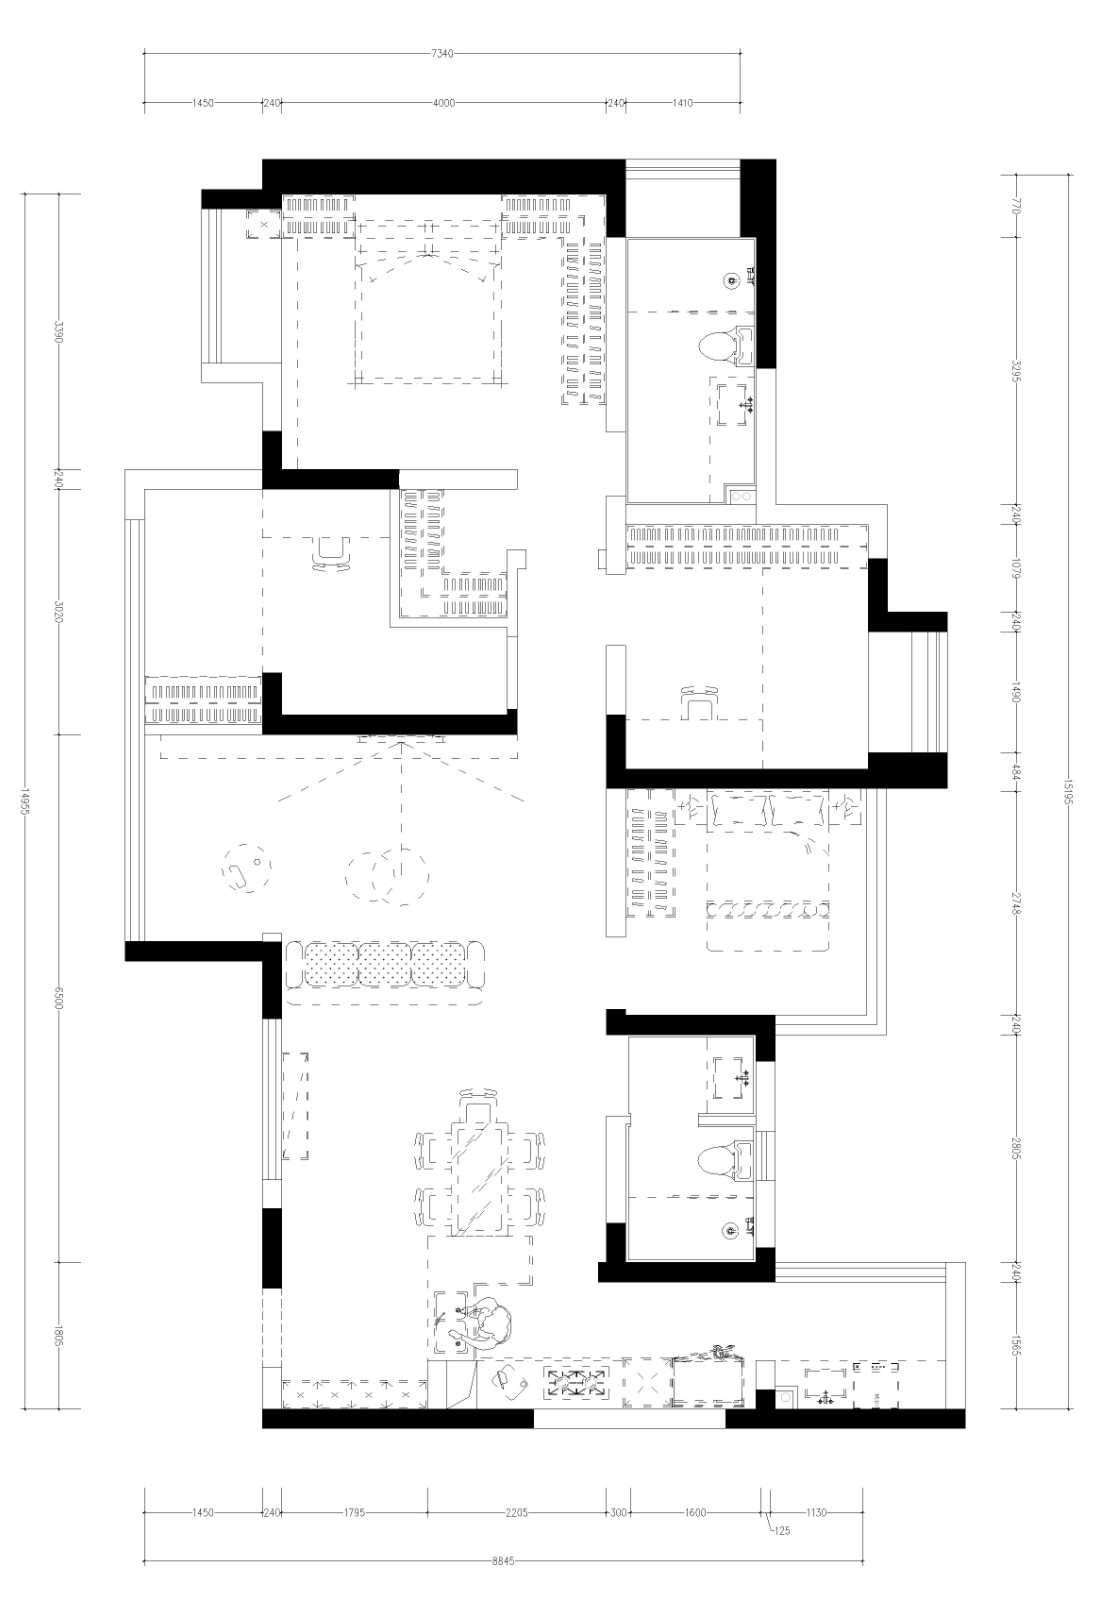 128现代三房装修效果图,简洁黑白灰-也可温暖有趣装修案例效果图-美广网(图1)